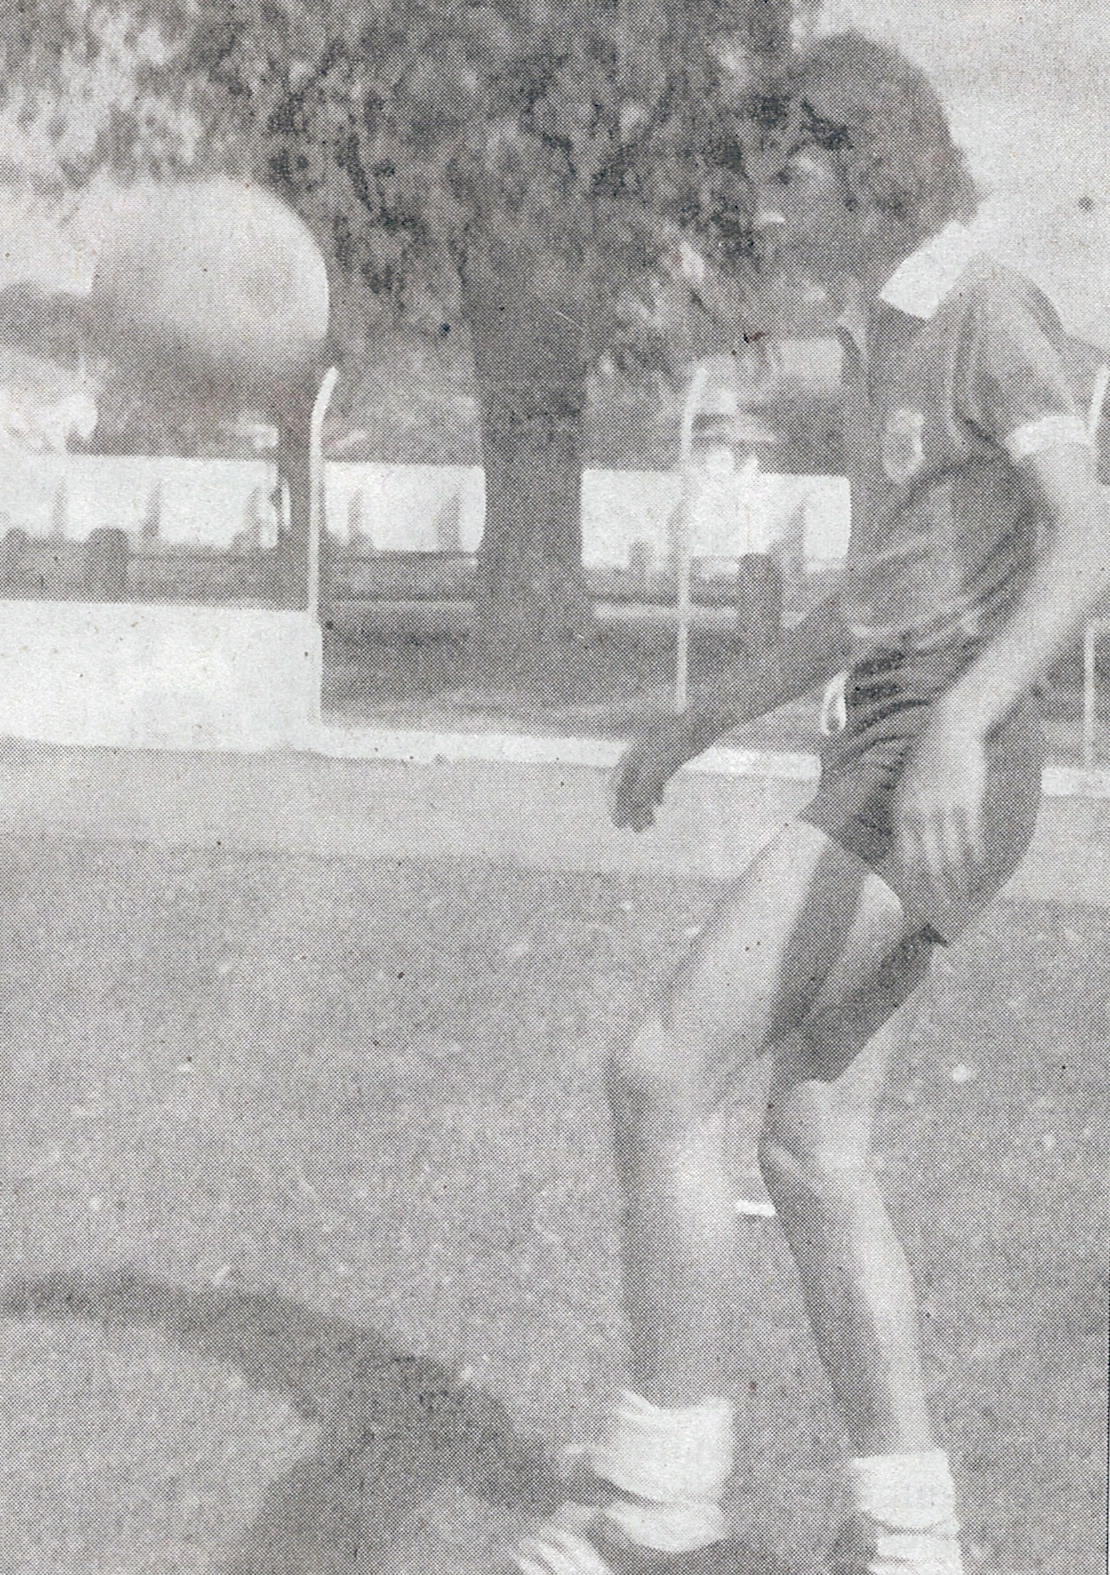 Vadão bate bola com o uniforme do Monte Azul, no início dos anos 70